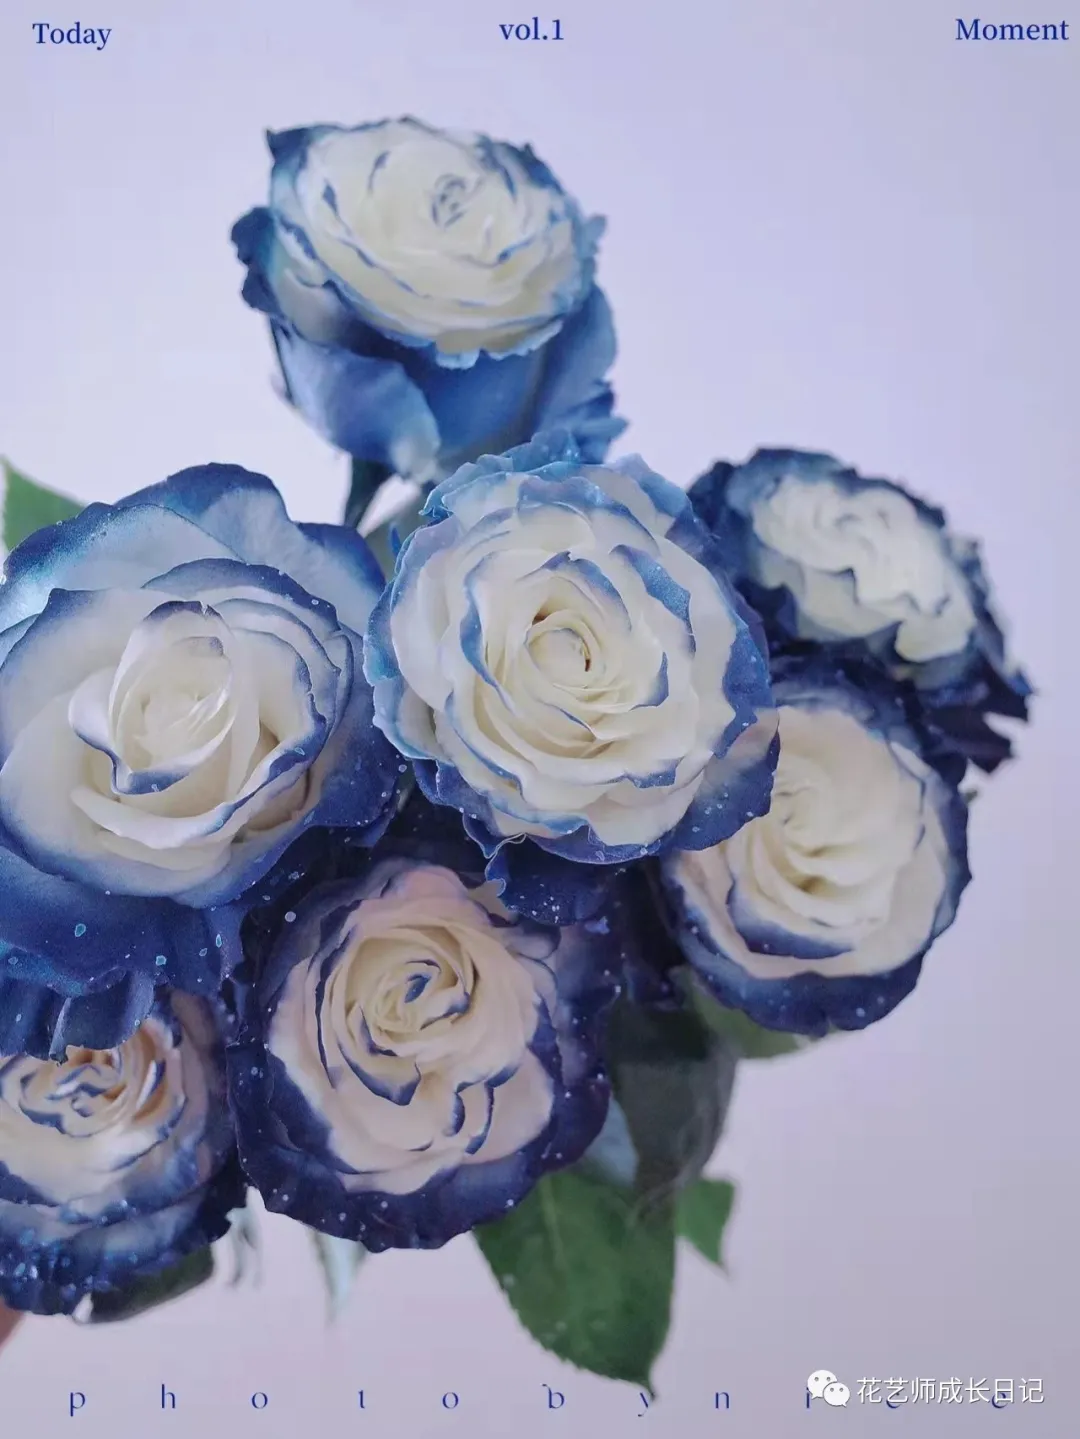 玫瑰花图片唯美一朵带包装(100朵玫瑰vol.56 - 厄瓜多尔银河玫瑰，在浪漫宇宙中盛放的蓝玫瑰)